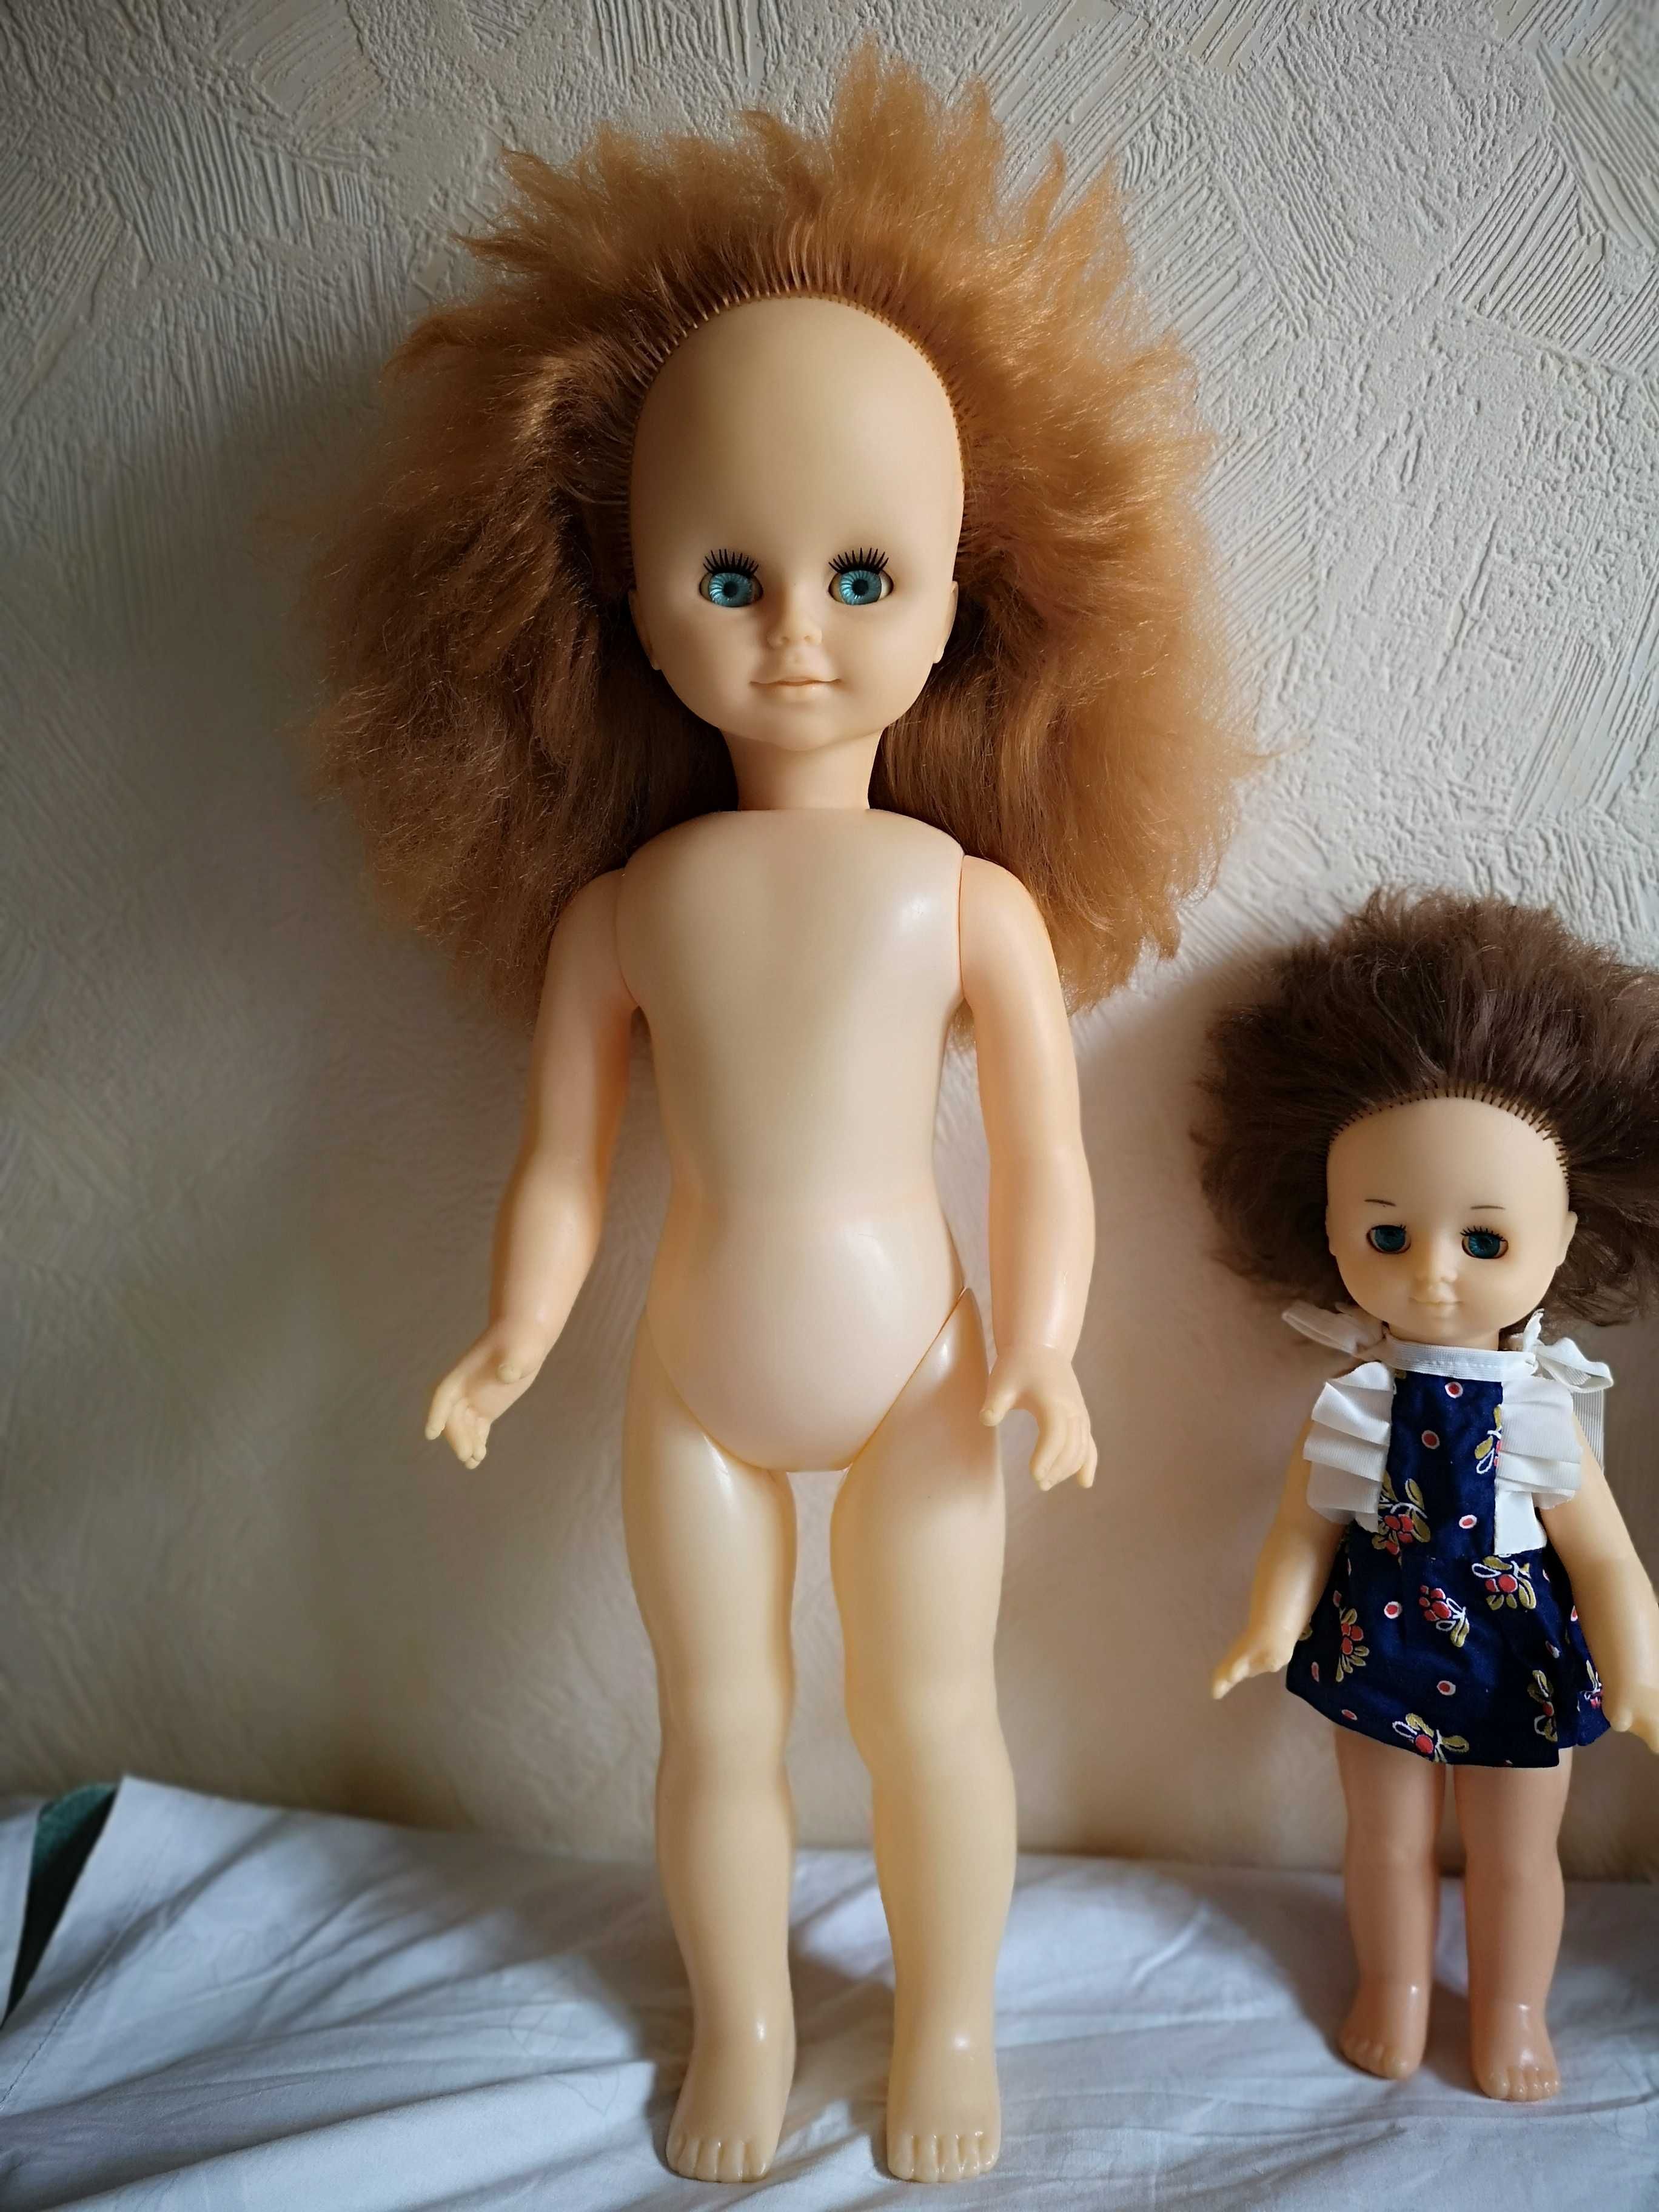 Редкая огромная винтажная кукла времён СССР, рост 60см